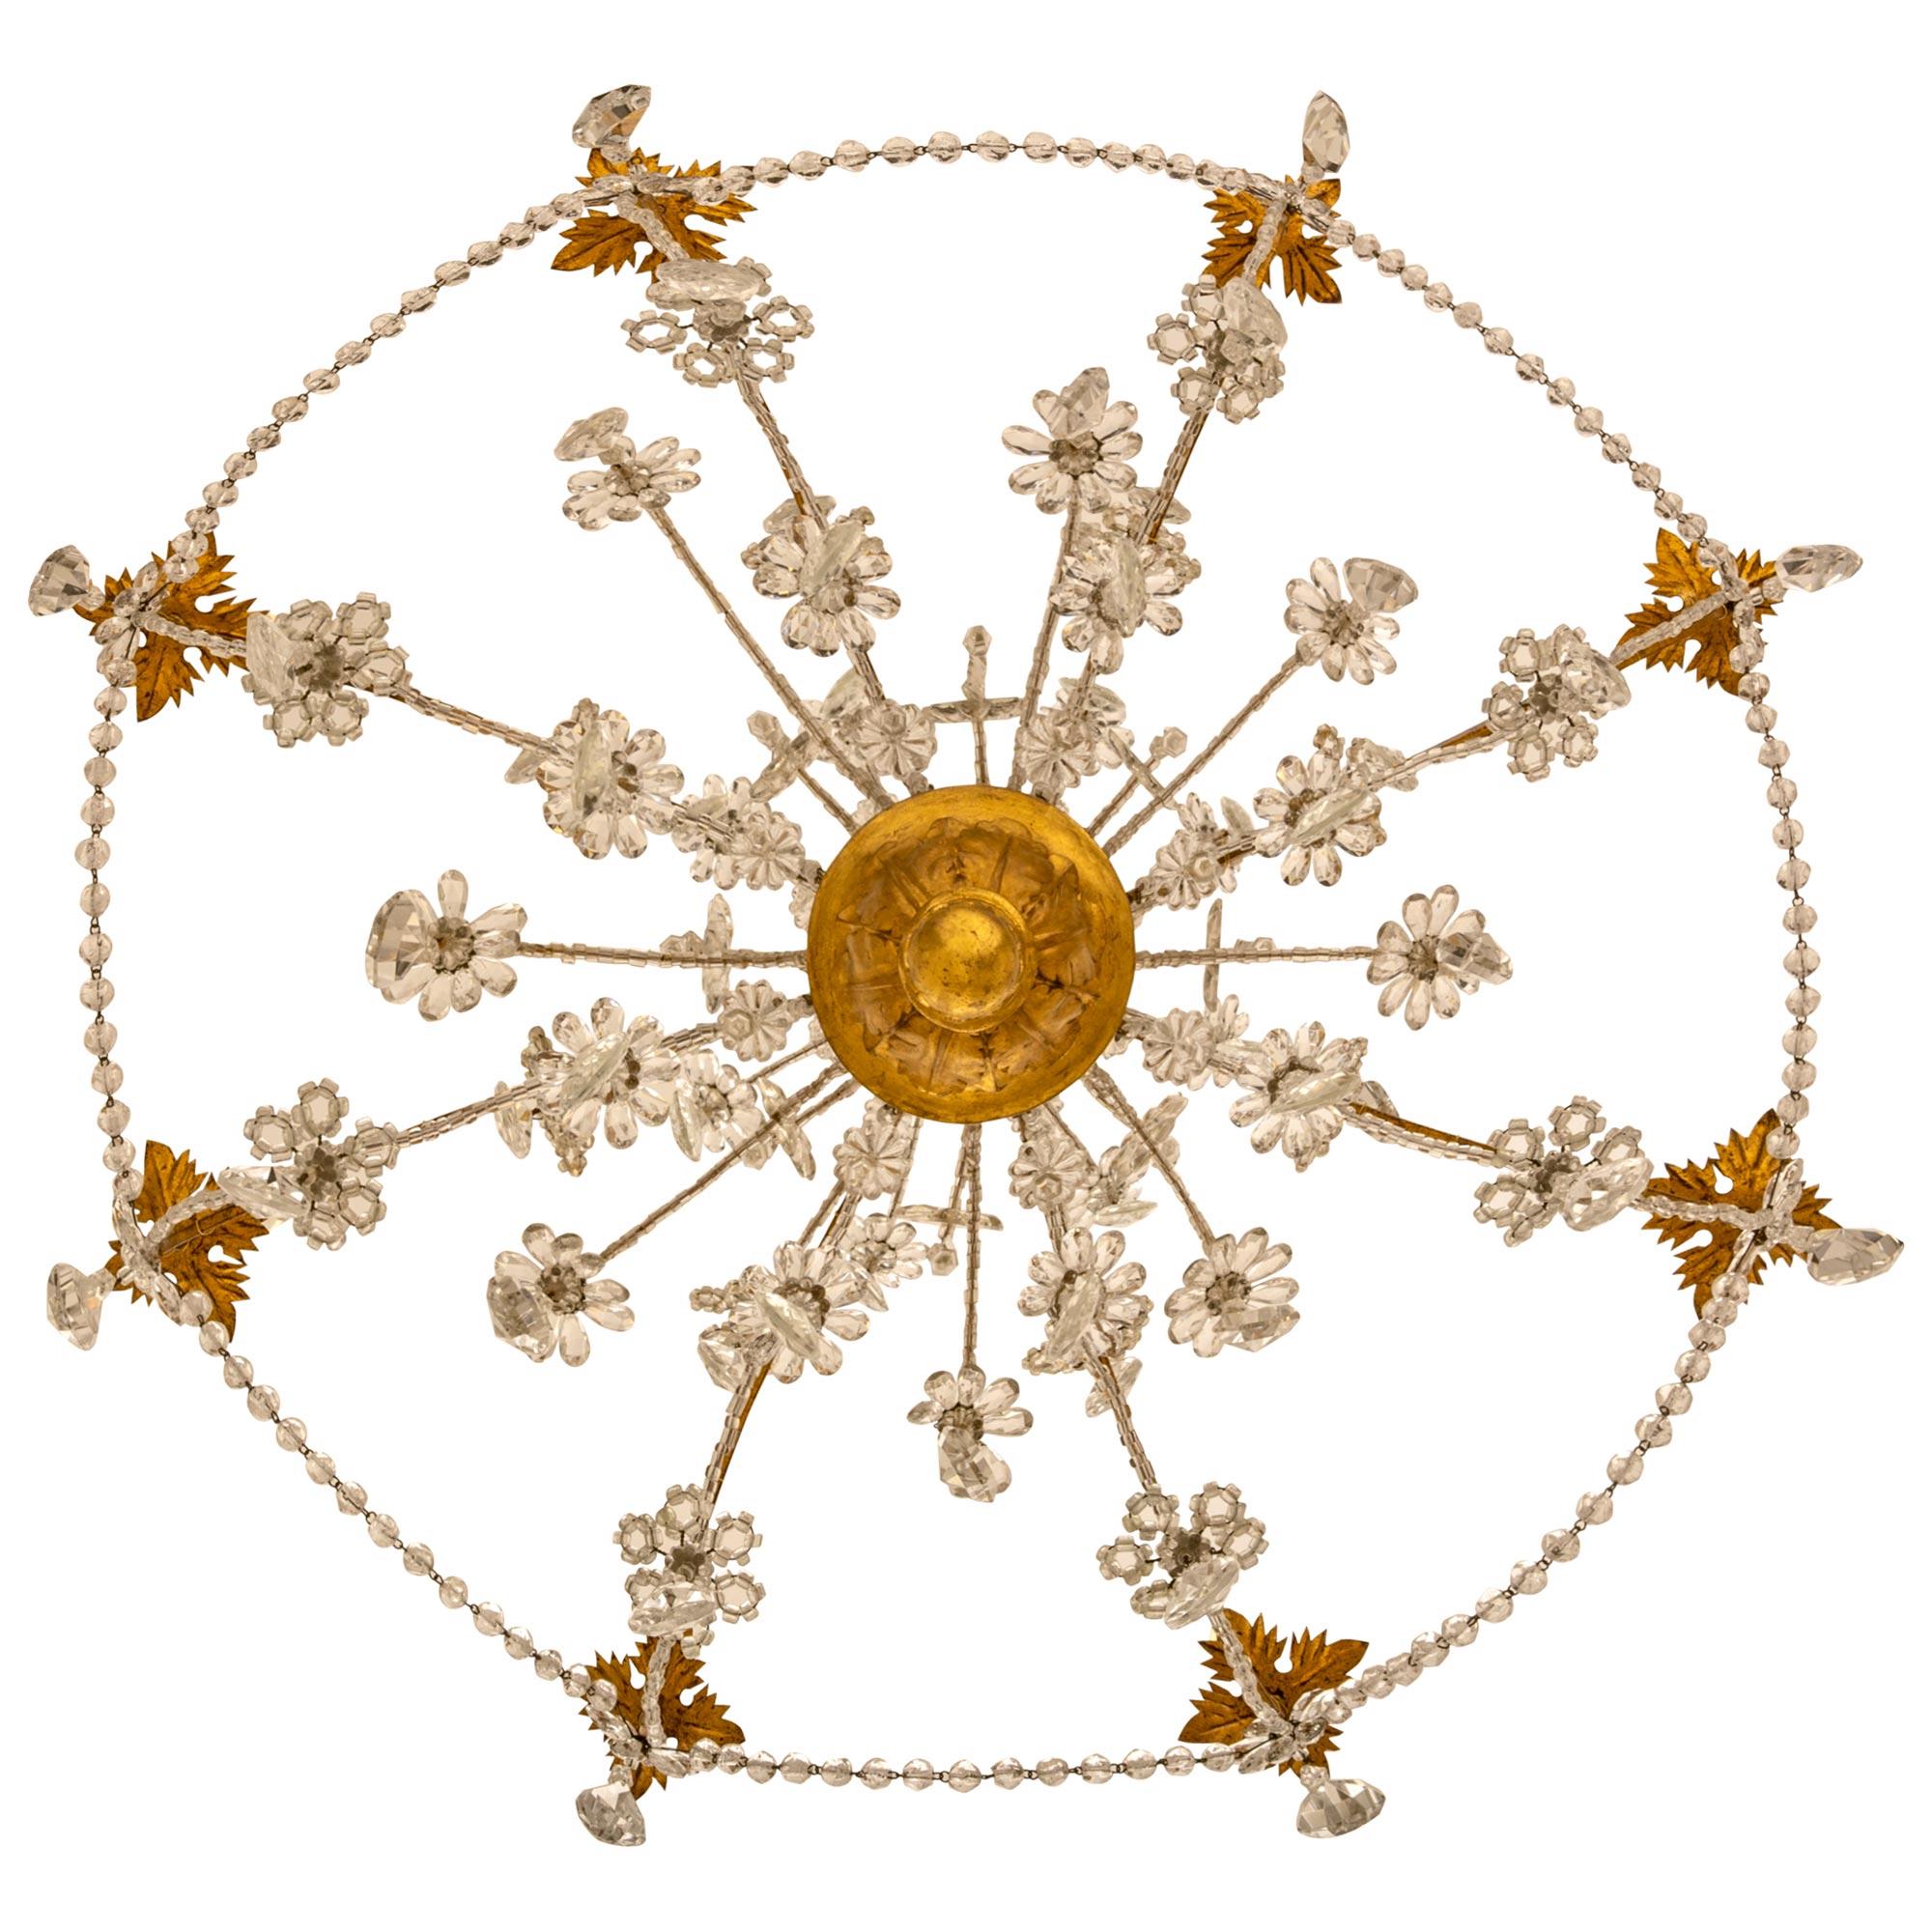 Eine wunderbar dekorative italienische 19. Jahrhundert Louis XV st. Giltwood, vergoldetes Eisen, Glasperlen und Kristall-Kronleuchter. Der achtarmige Kronleuchter hat einen unteren Giltwood-Finial unter geschnitzten Akanthusblättern, der zu den acht